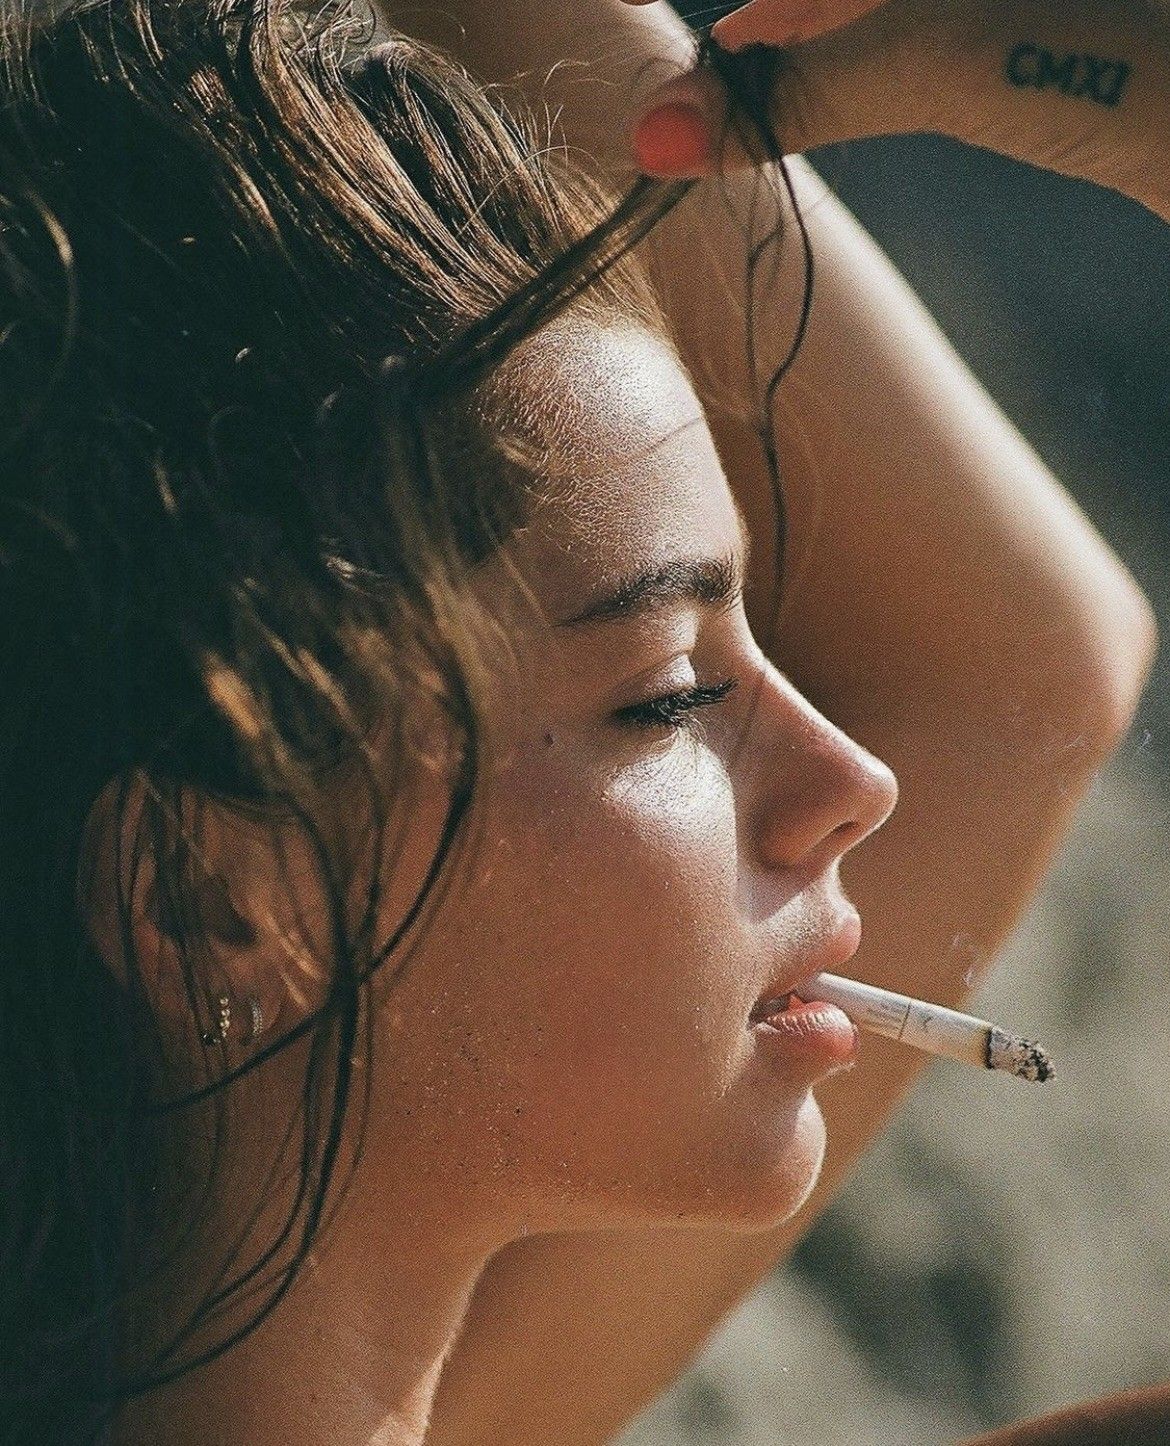 V beautiful smoker